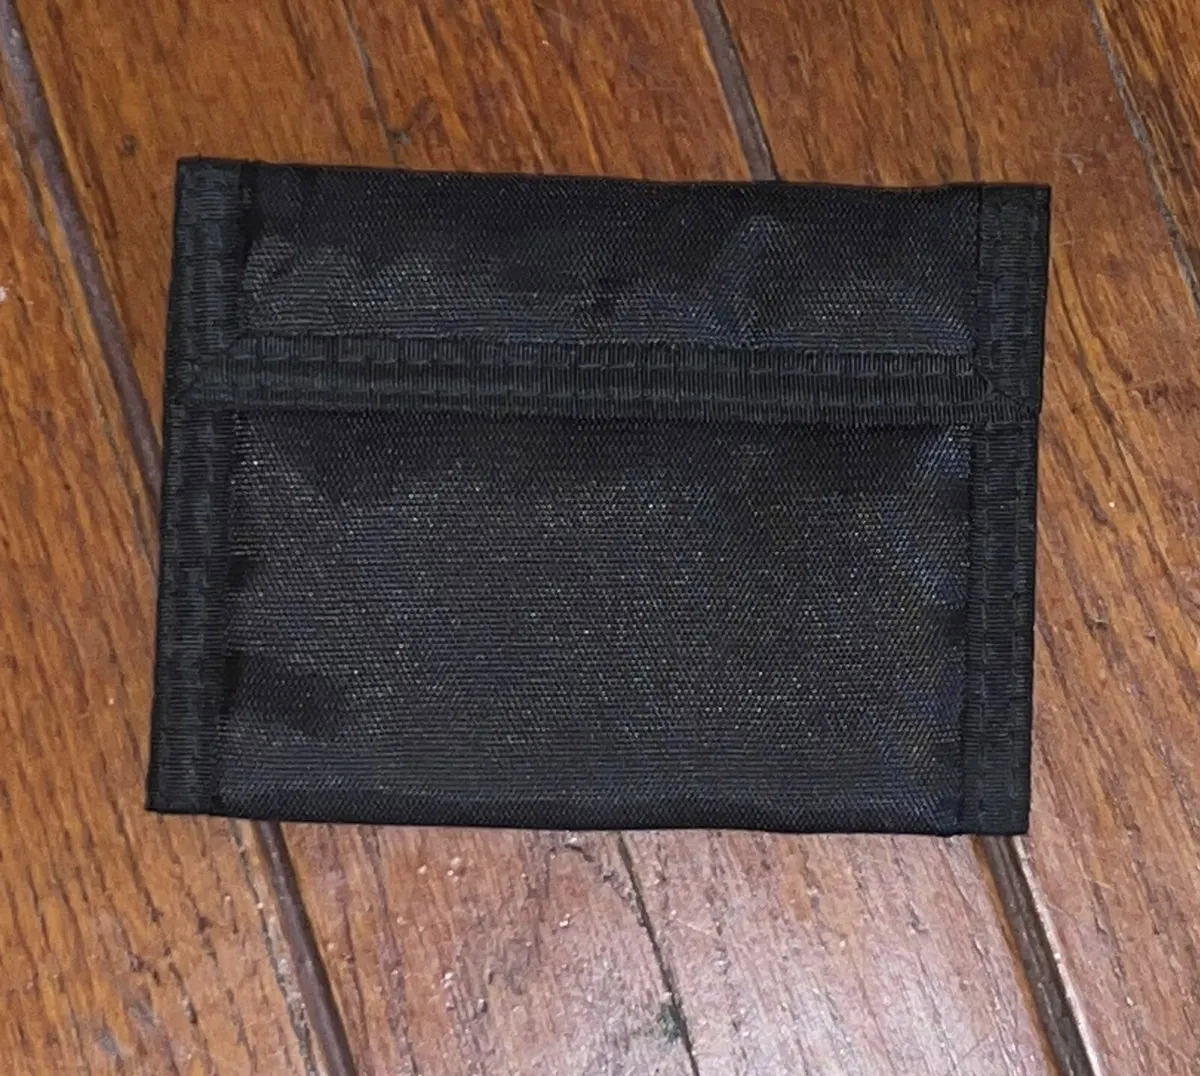 Velcro wallets